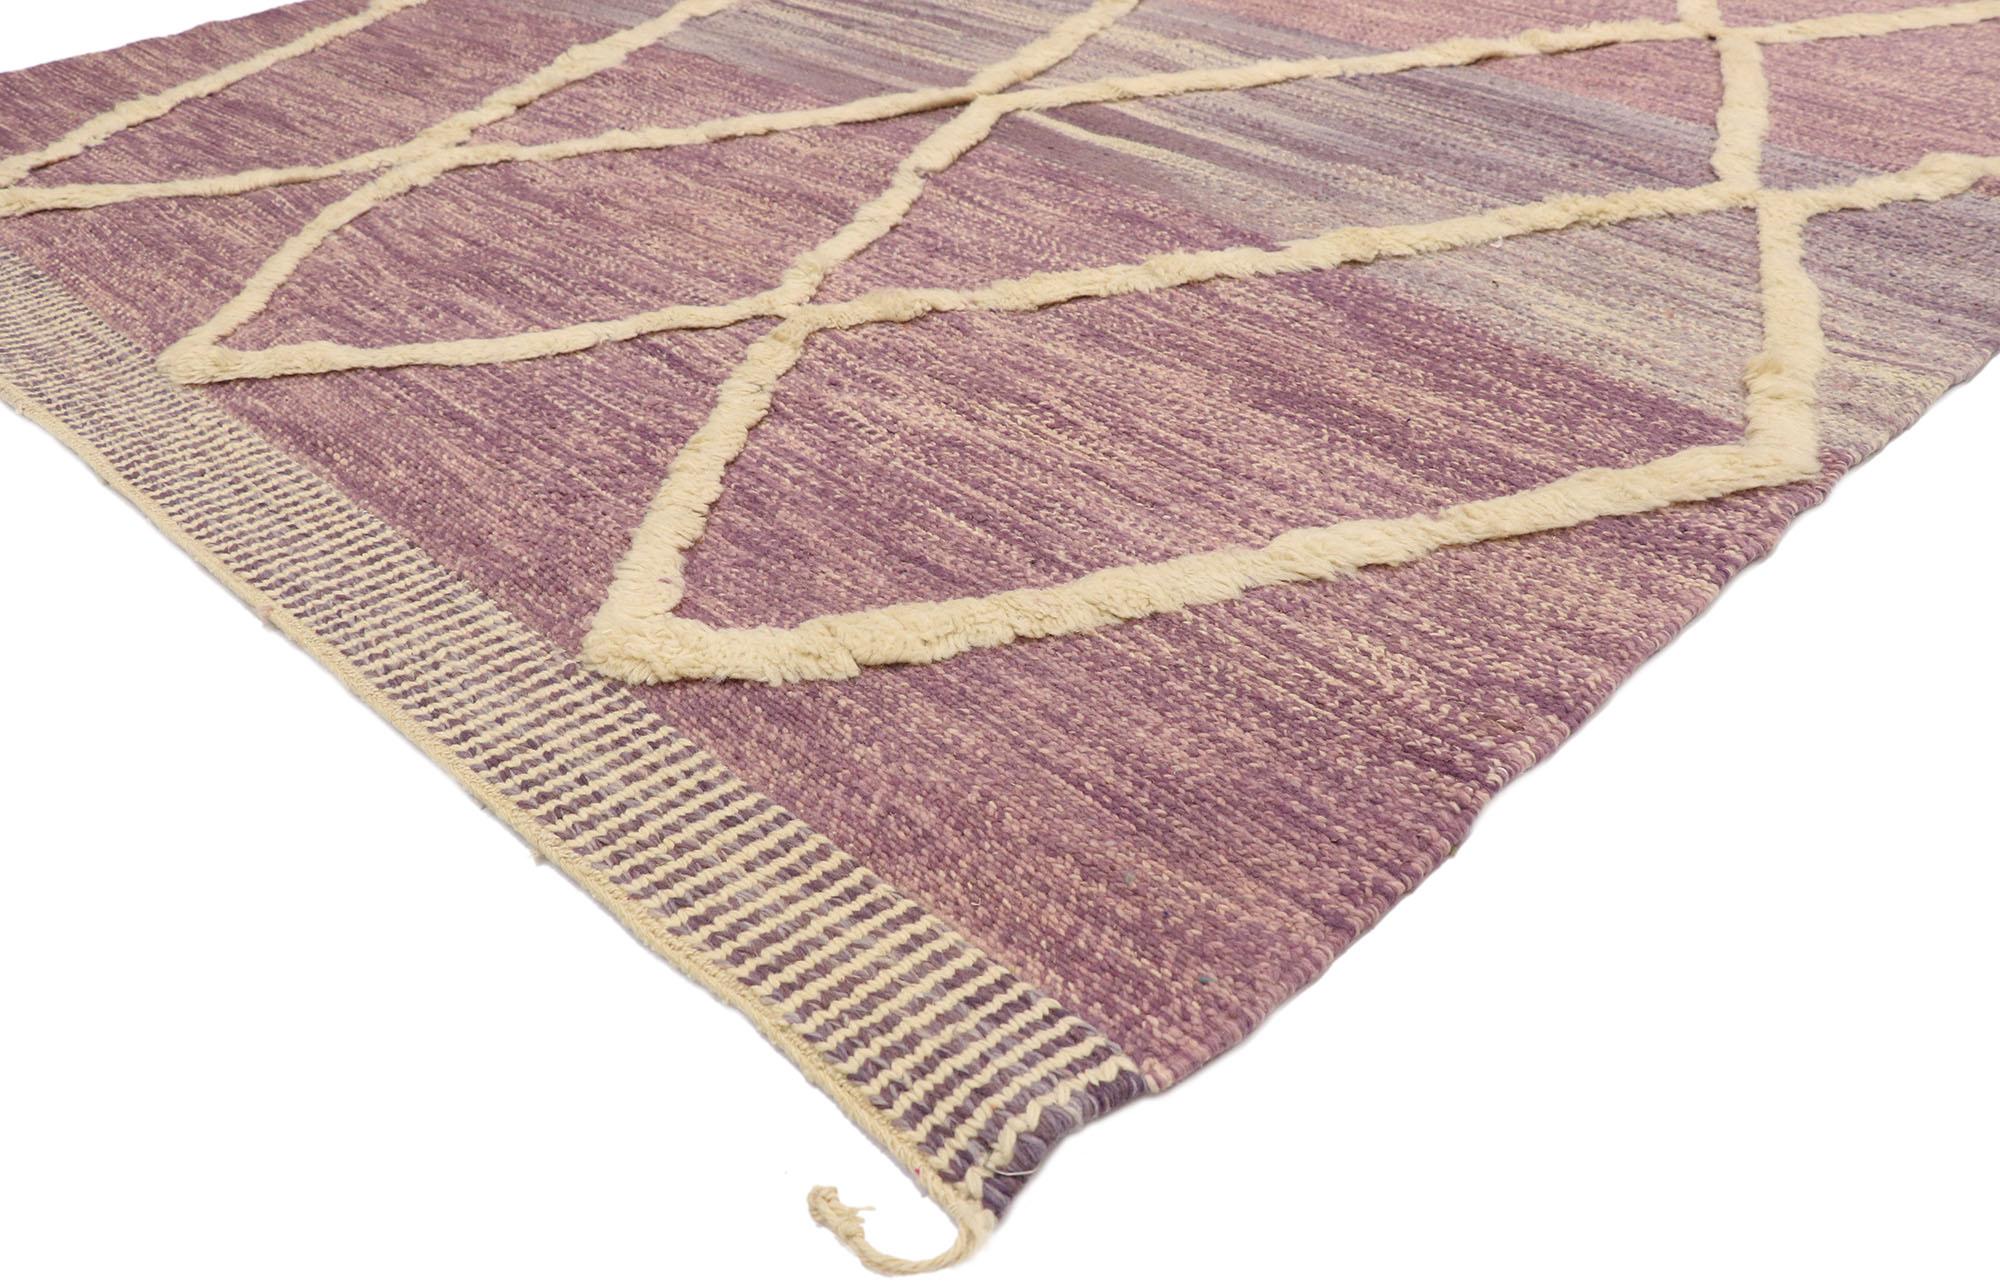 21059, New Berber Moroccan Textured Rug with Raised Trellis Design 07'00 x 10'08. Dieser moderne marokkanische Souf-Teppich aus handgewebter Wolle strahlt Charme und Anmut aus und bietet eine elegante und vornehme Design-Ästhetik mit weichen,